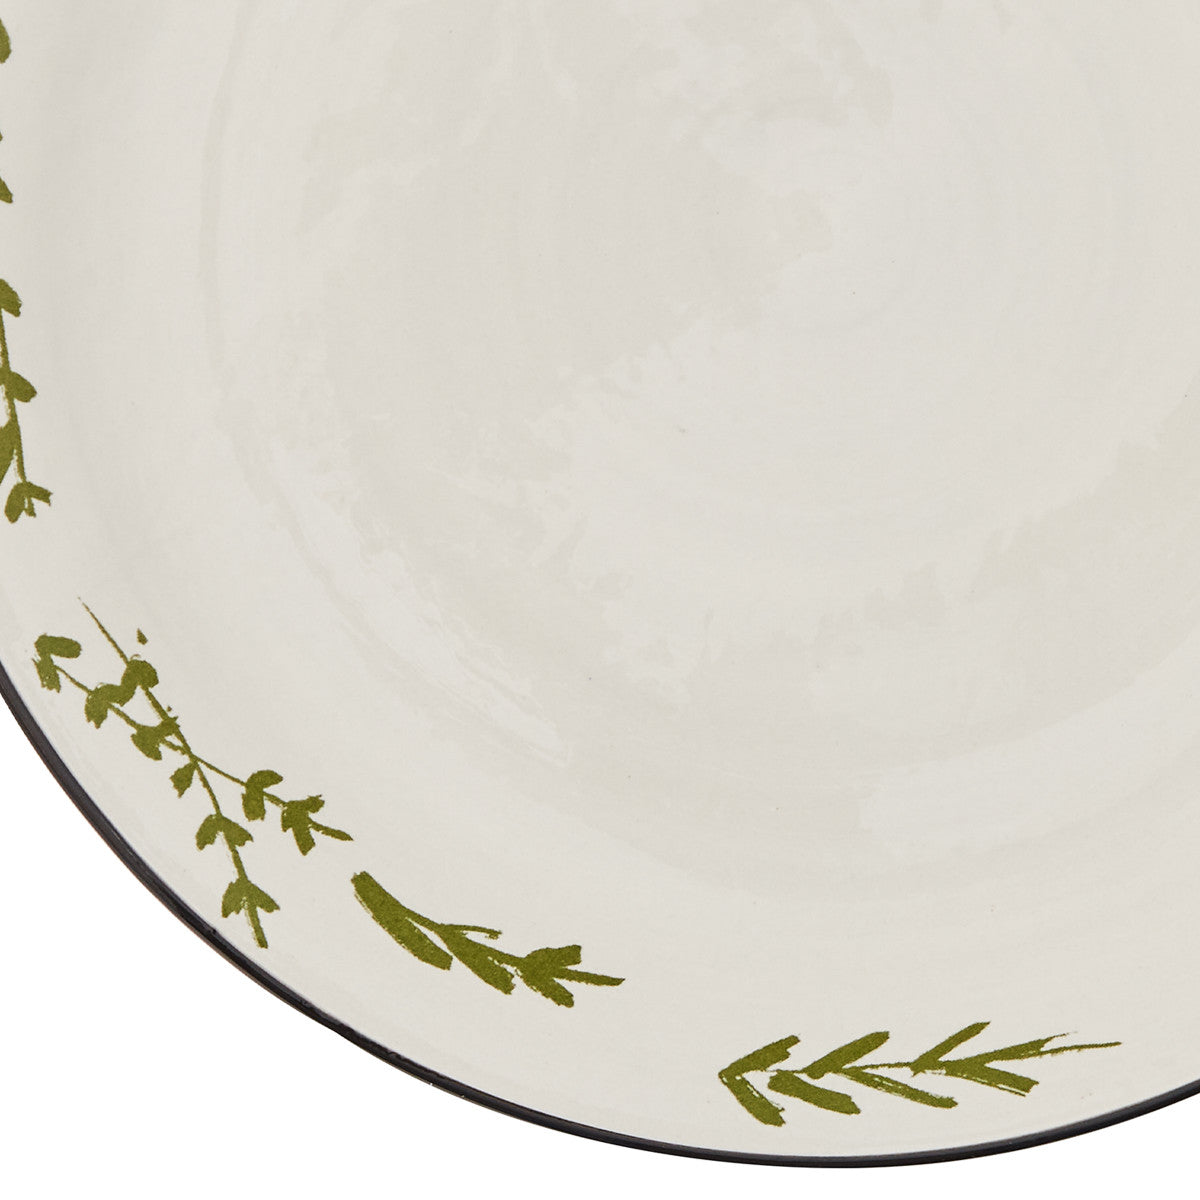 Together Dinner Plates - Set of 4 Park Designs